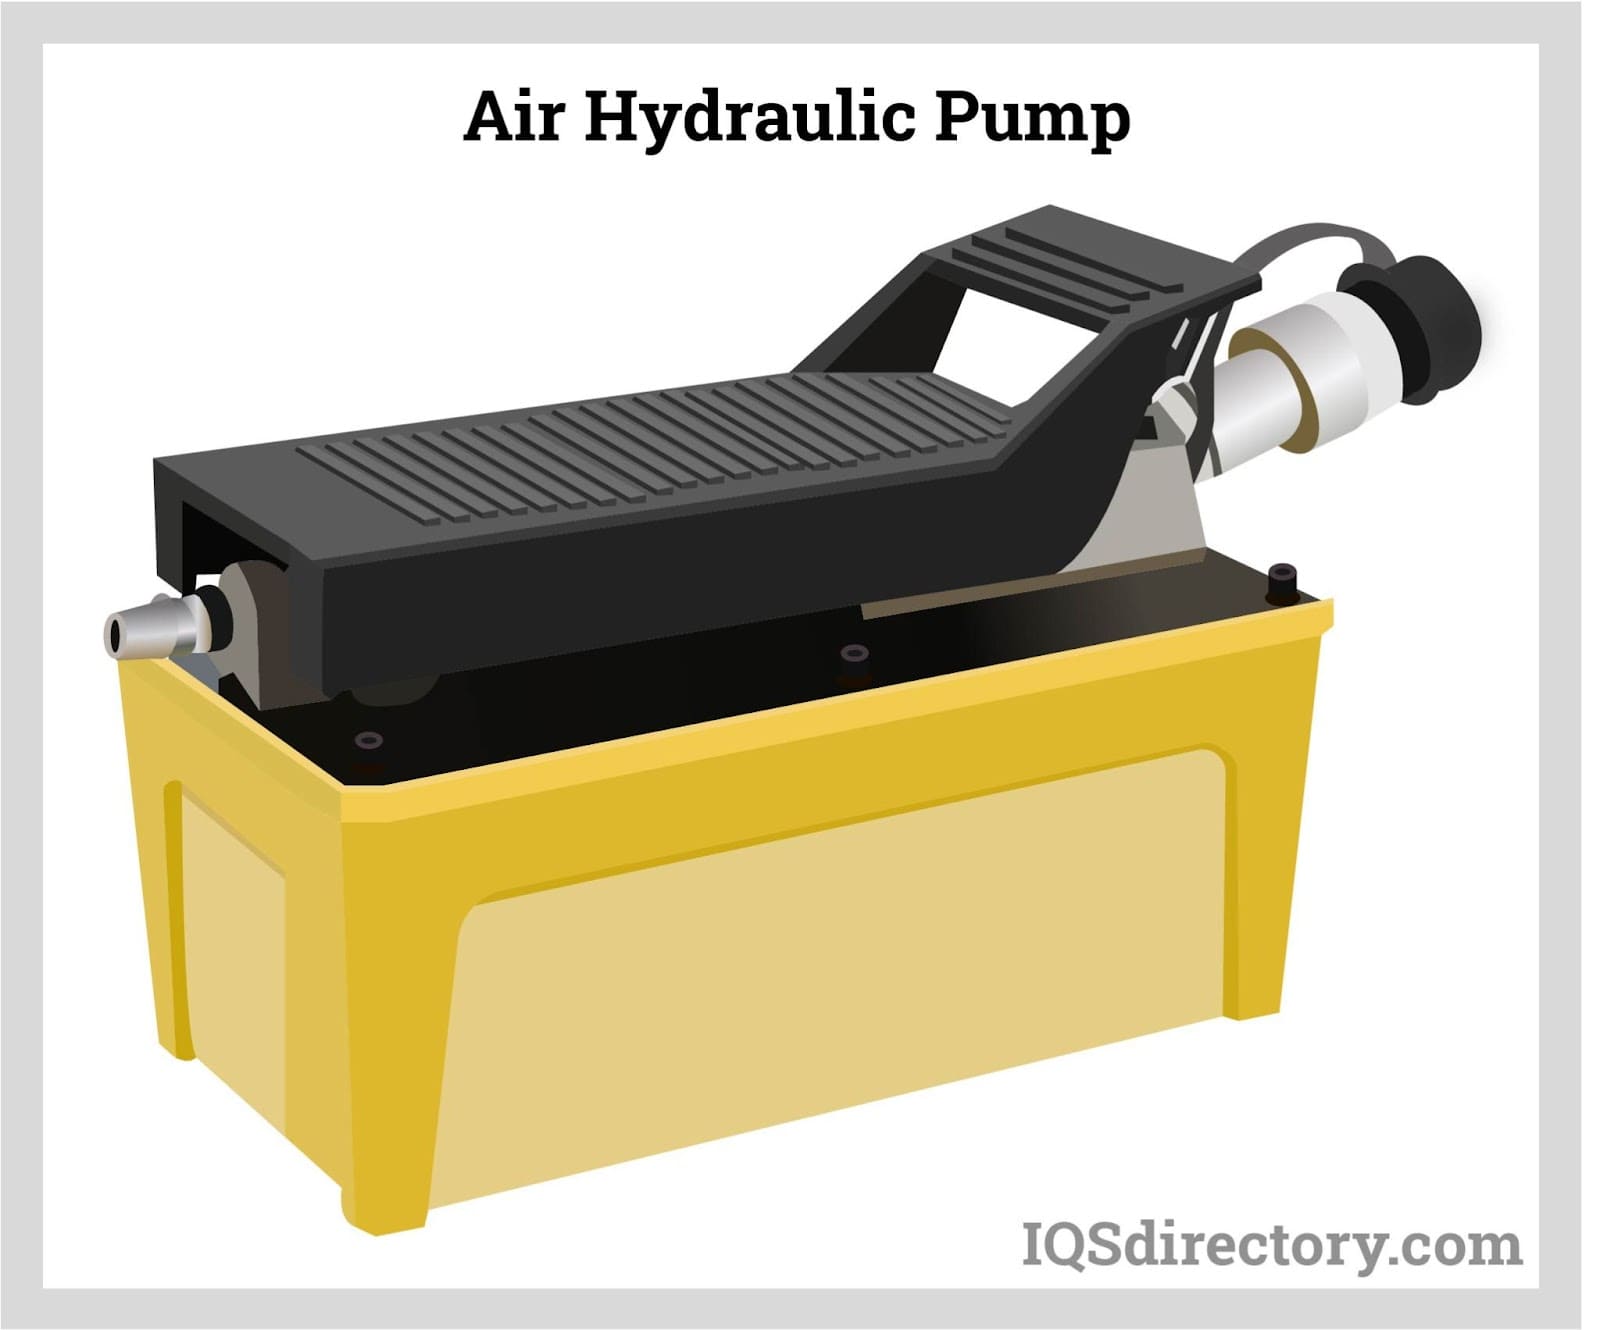 Air Hydraulic Pump